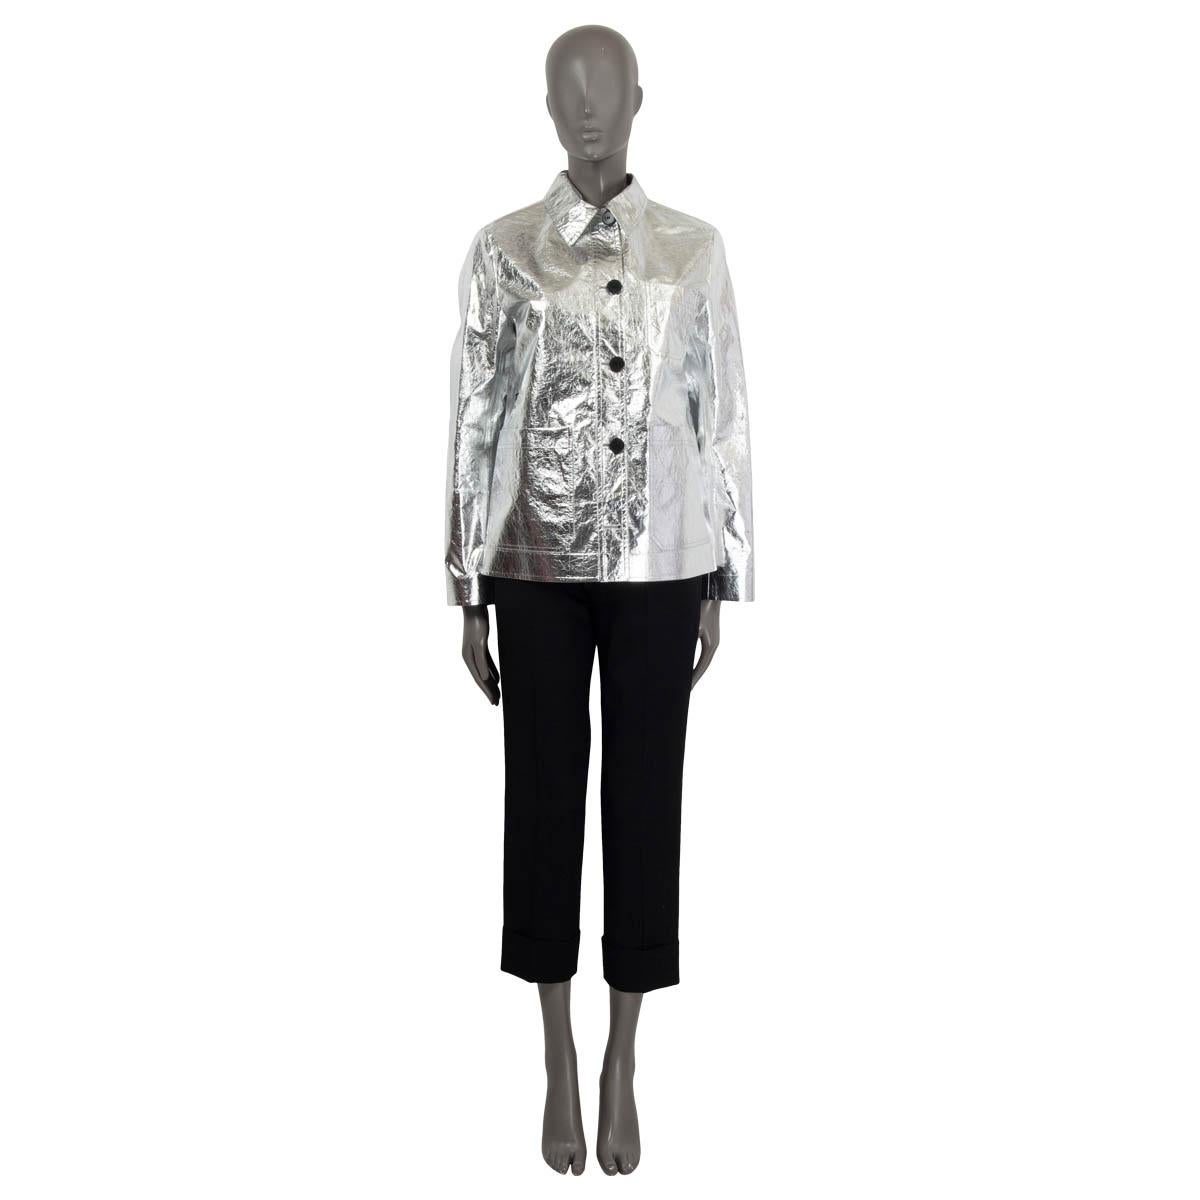 100% authentique Christian Dior Pre-Fall 2021 'Caro' veste froissée en polyester argenté métallisé (100%). Il comporte trois poches plaquées sur le devant et des manches longues. S'ouvre à l'aide de cinq boutons sur le devant. Non doublé. N'a été